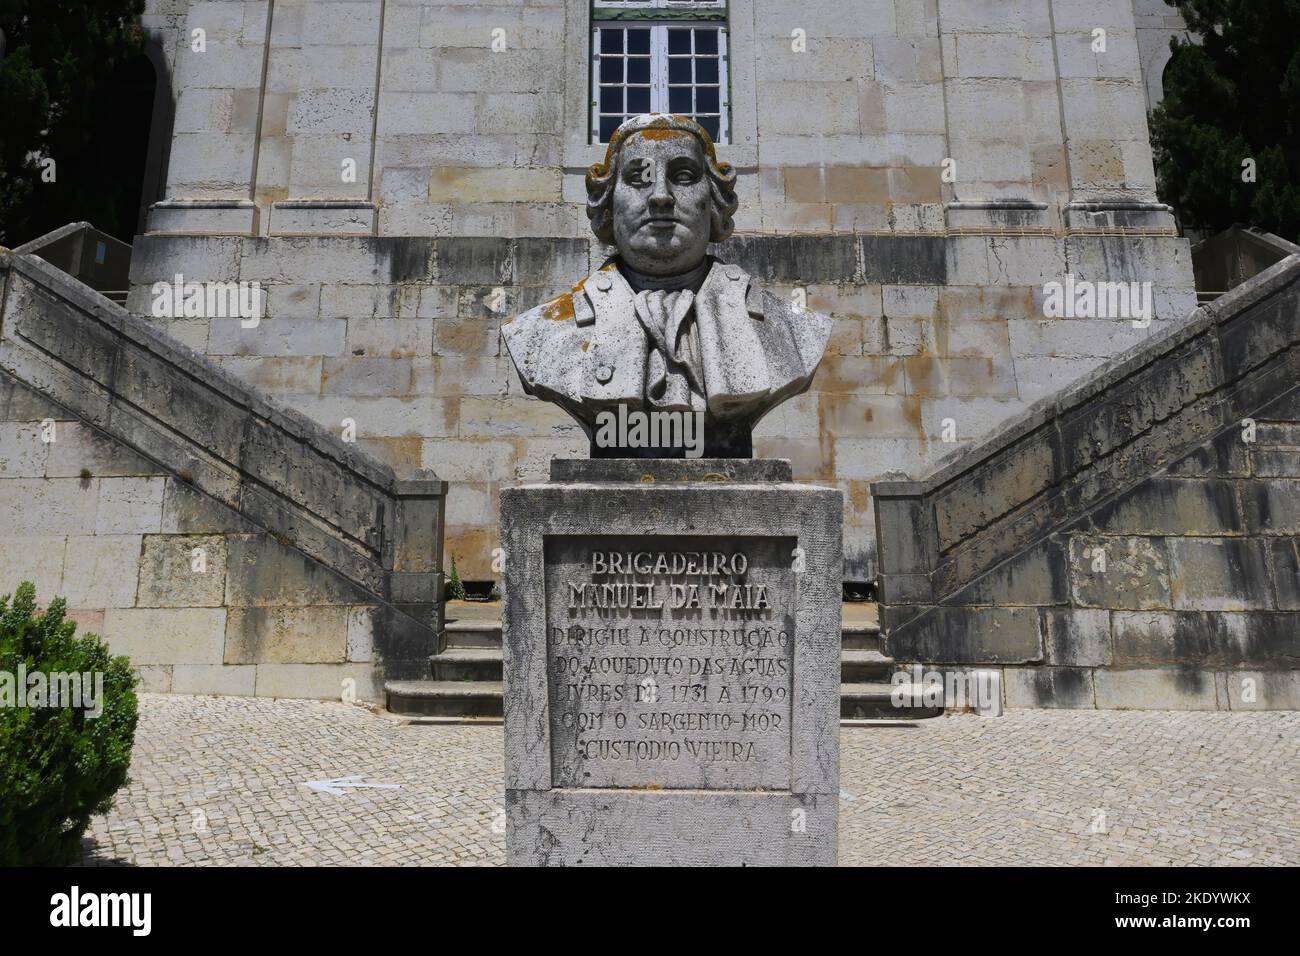 Statue de Manuel da Maia devant l'entrée du Musée de l'eau, réservoir de Mae de Agua, Lisbonne, Portugal Banque D'Images